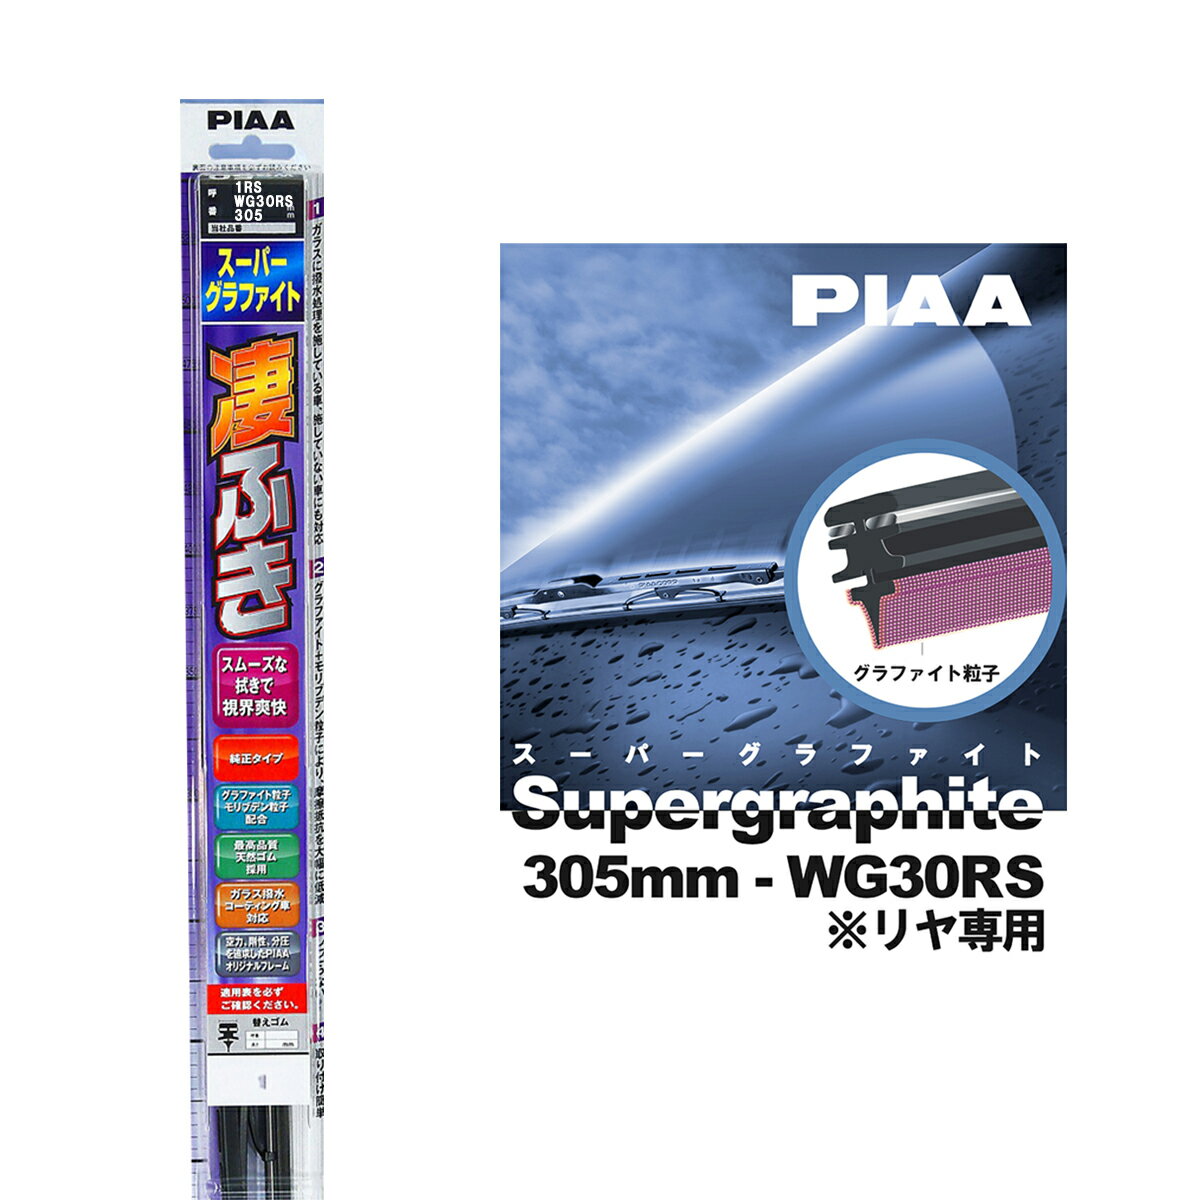 PIAA ワイパー ブレード 305mm 呼番1RS リヤ専用 WG30RS 1本入 凄ふき スーパーグラファイト グラファイトコーティングゴム 替えゴム交換OK ビビリ音低減 拭き取り クリア視界 カー用品